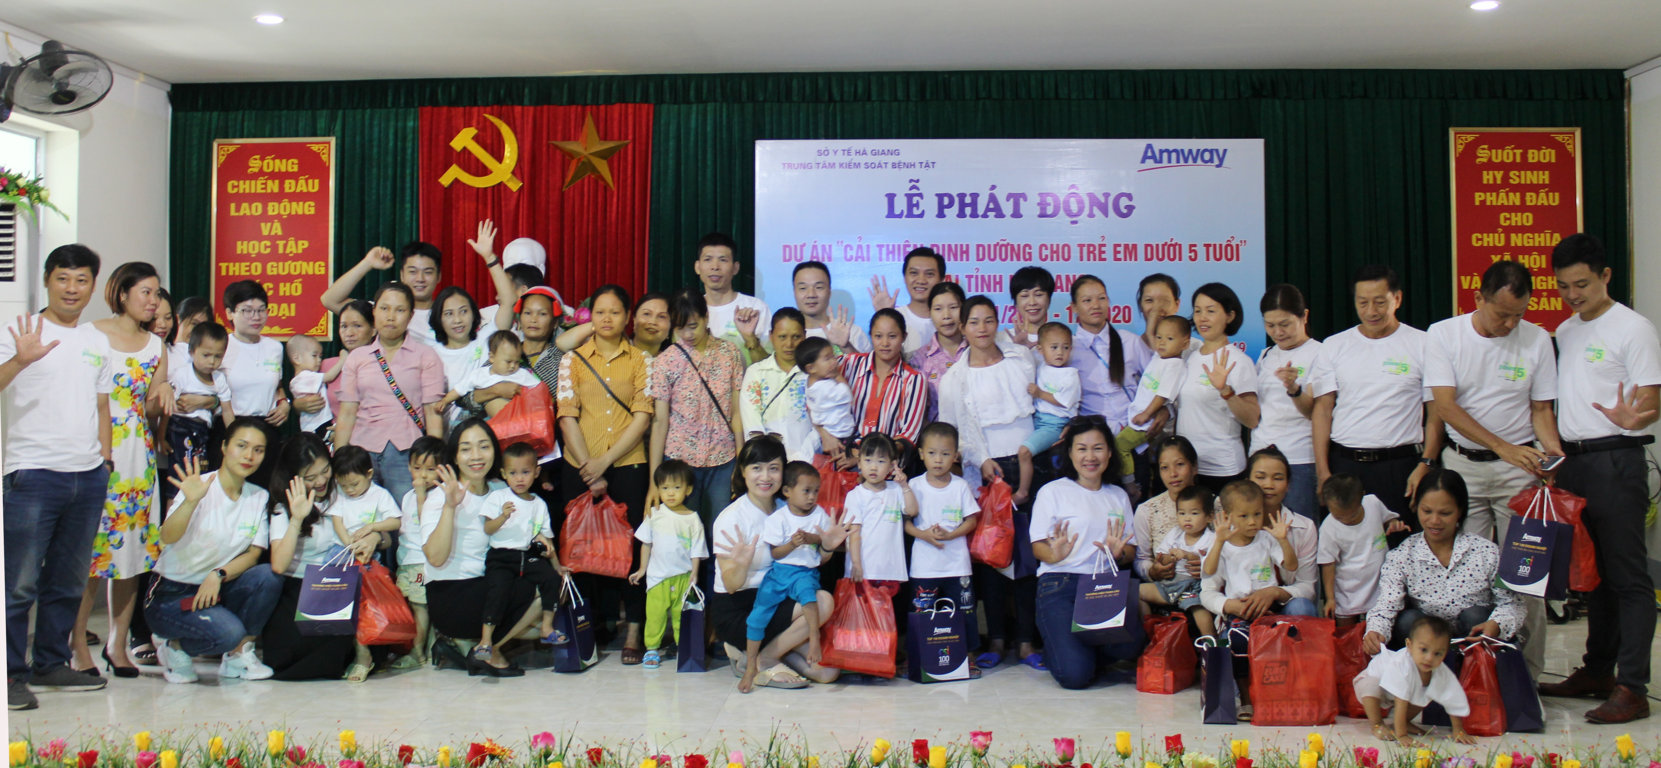 Lễ phát động Dự án “Cải thiện tình trạng dinh dưỡng cho trẻ em dưới 5 tuổi” tại Hà Giang